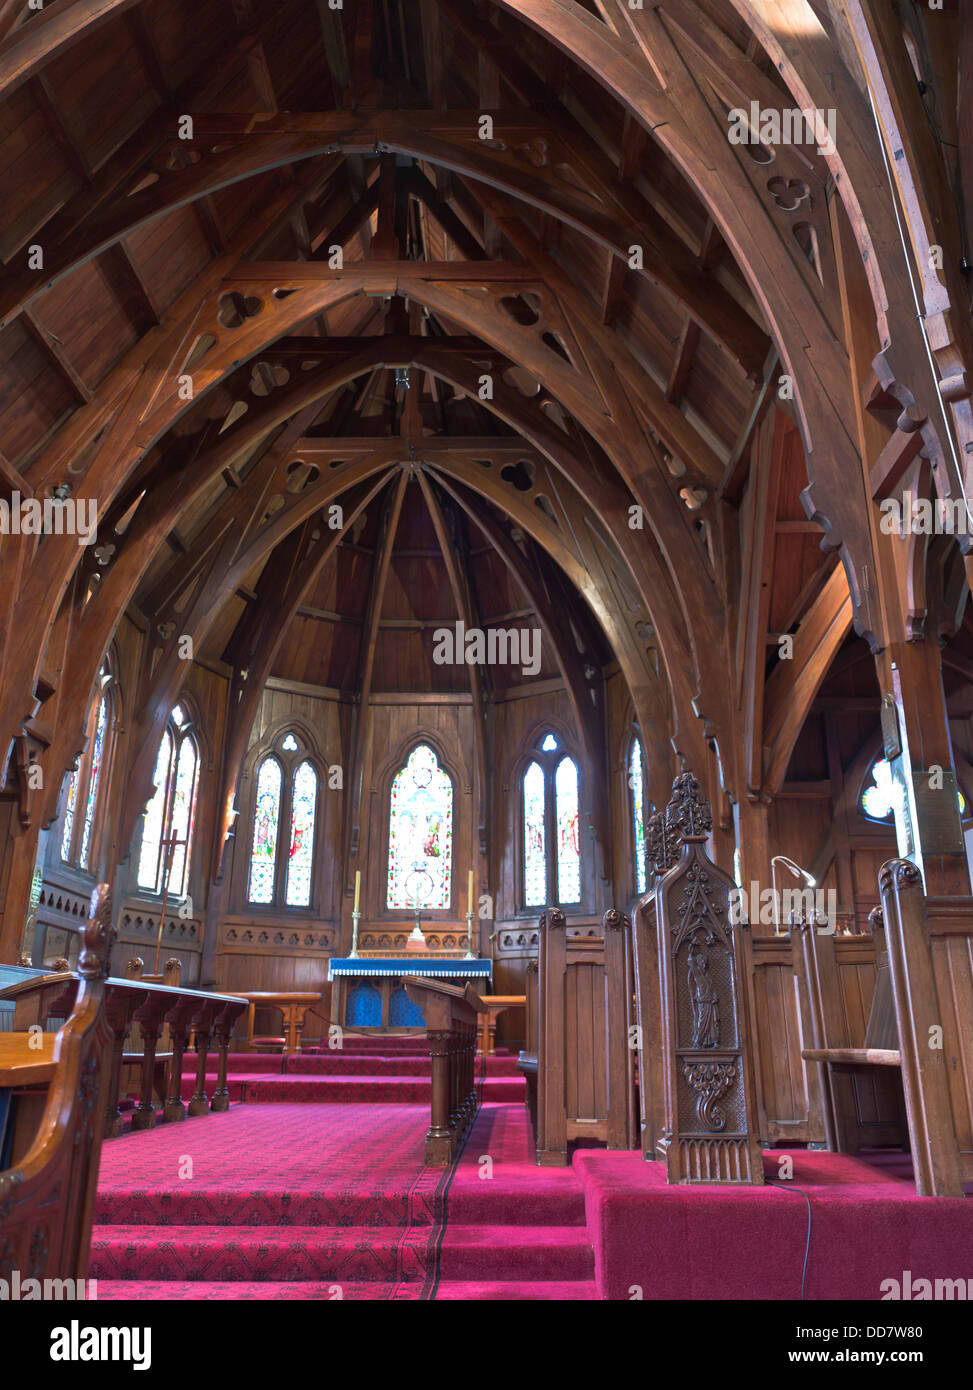 dh Old St Pauls WELLINGTON NOUVELLE-ZÉLANDE Nouvelle-Zélande Nouvelle-Zélande ancienne cathédrale Église anglicane intérieur en bois personne Banque D'Images